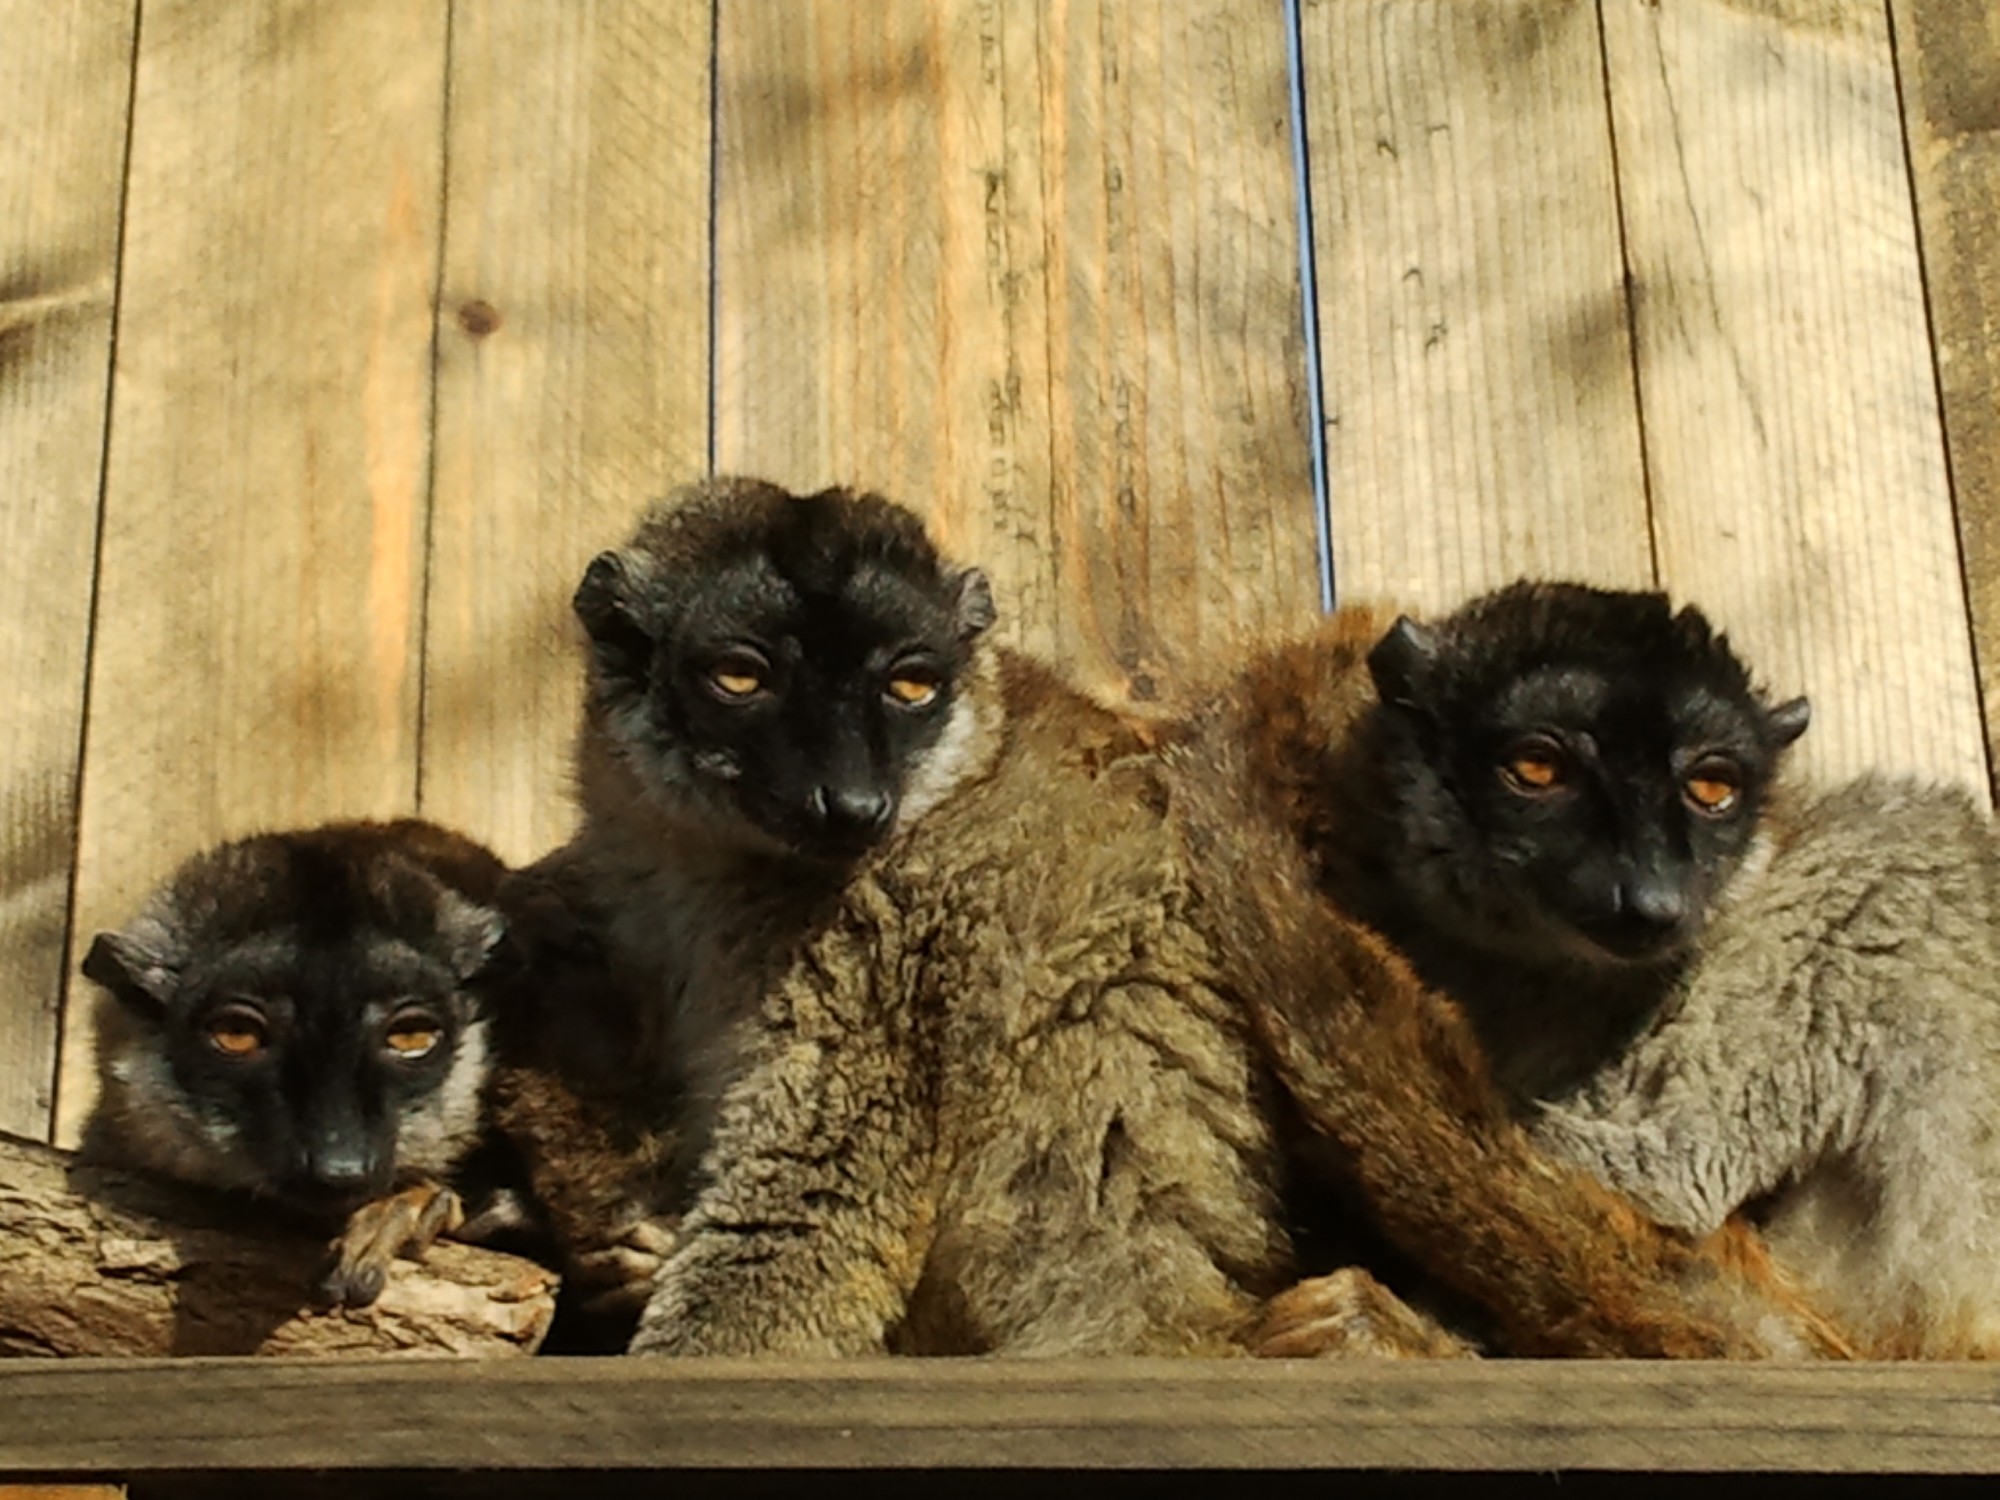 Notre parc animalier en Aquitaine héberge plusieurs espèces de lémuriens